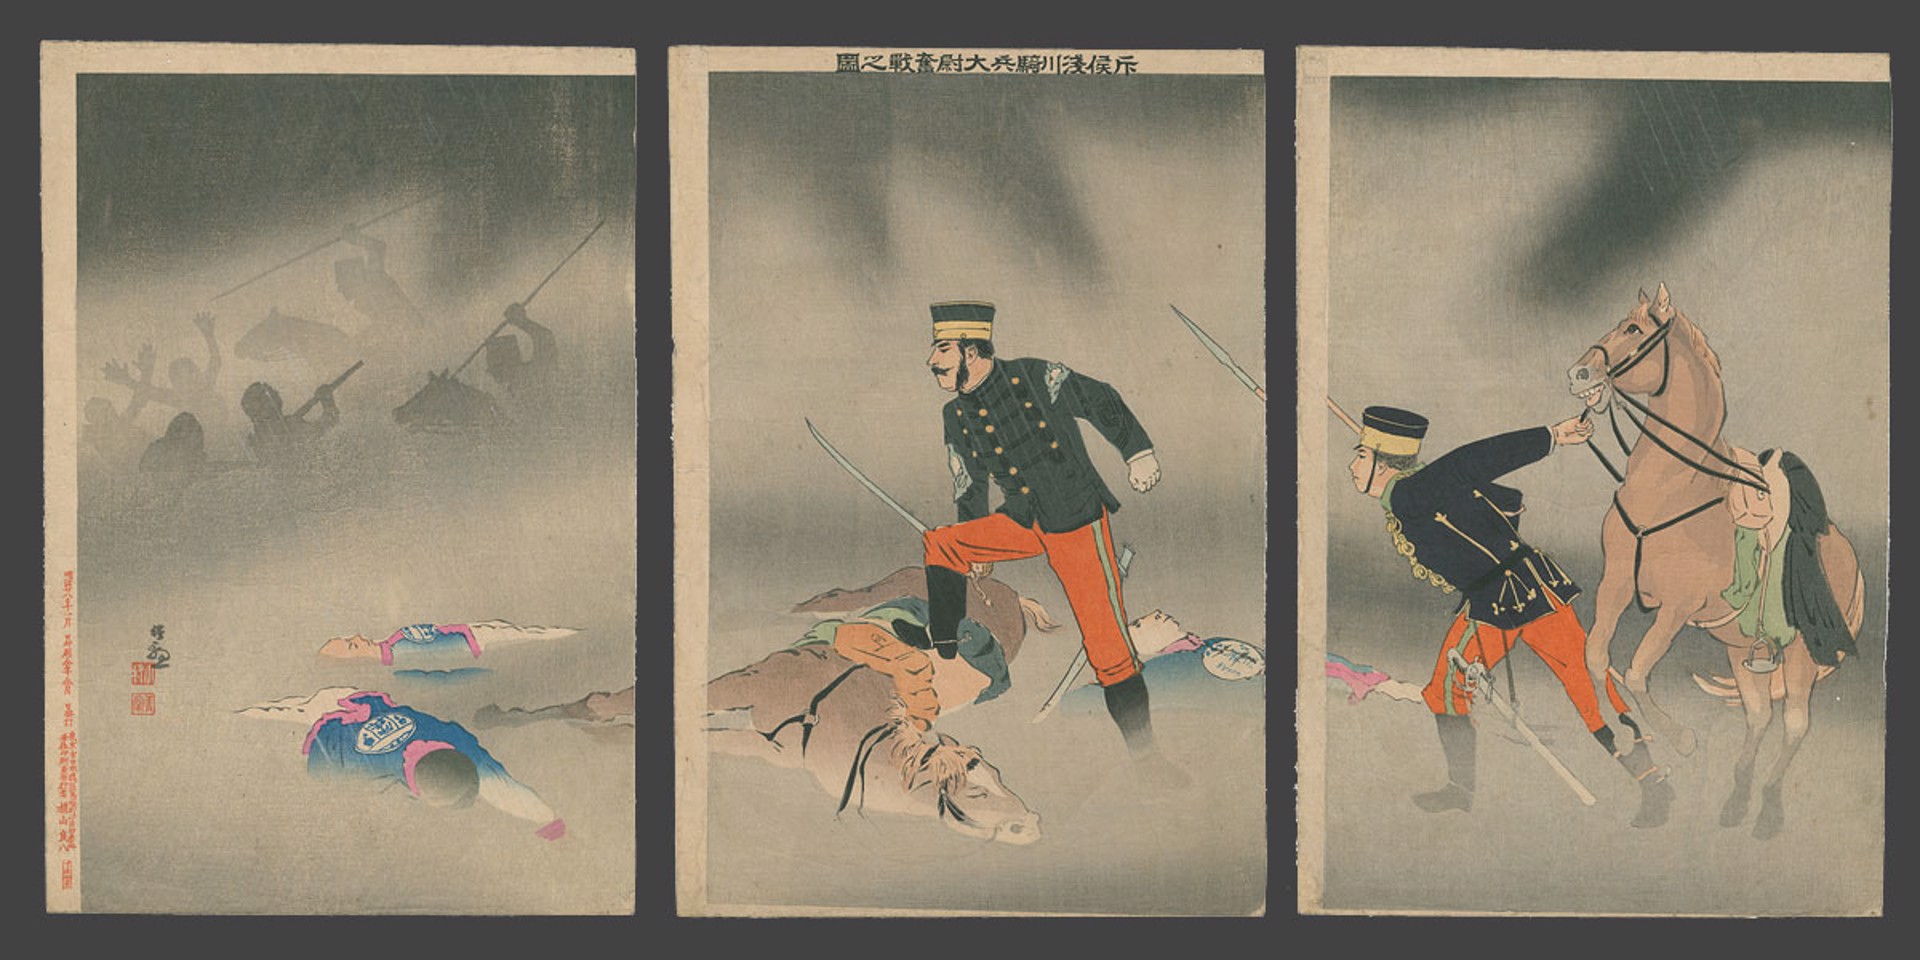 The Heroic Fight of Cavalry Scout Captain Asakawa Sino - Japanese war by Kiyochika